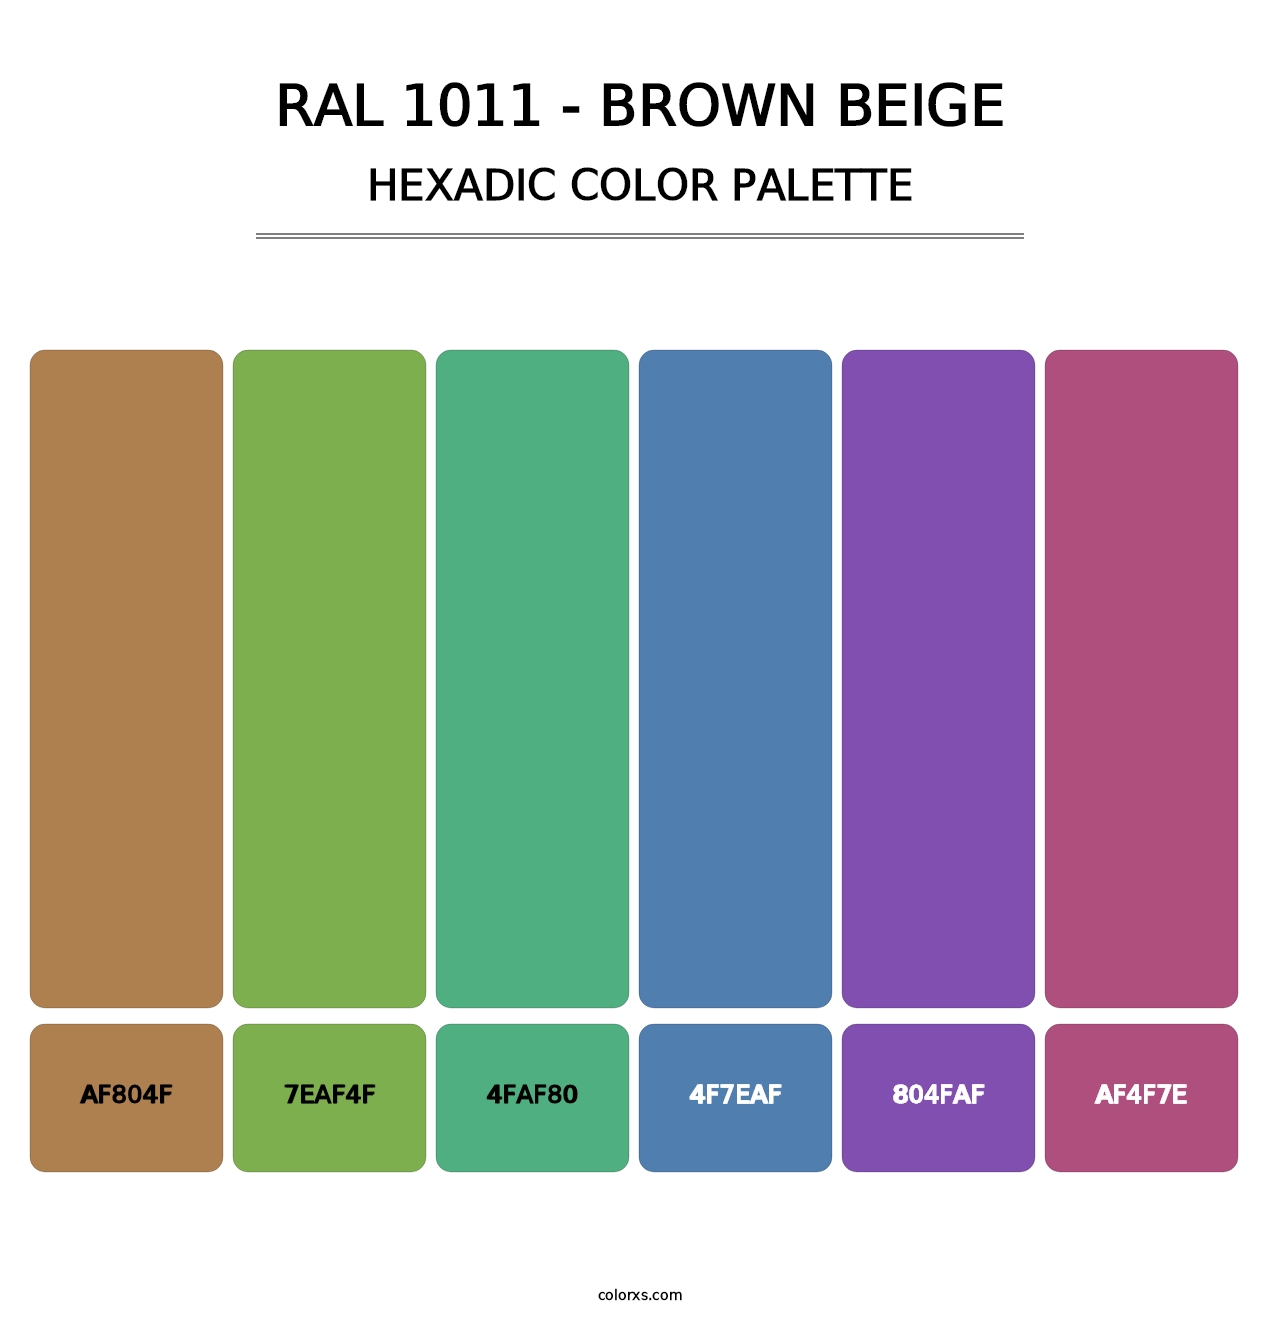 RAL 1011 - Brown Beige - Hexadic Color Palette